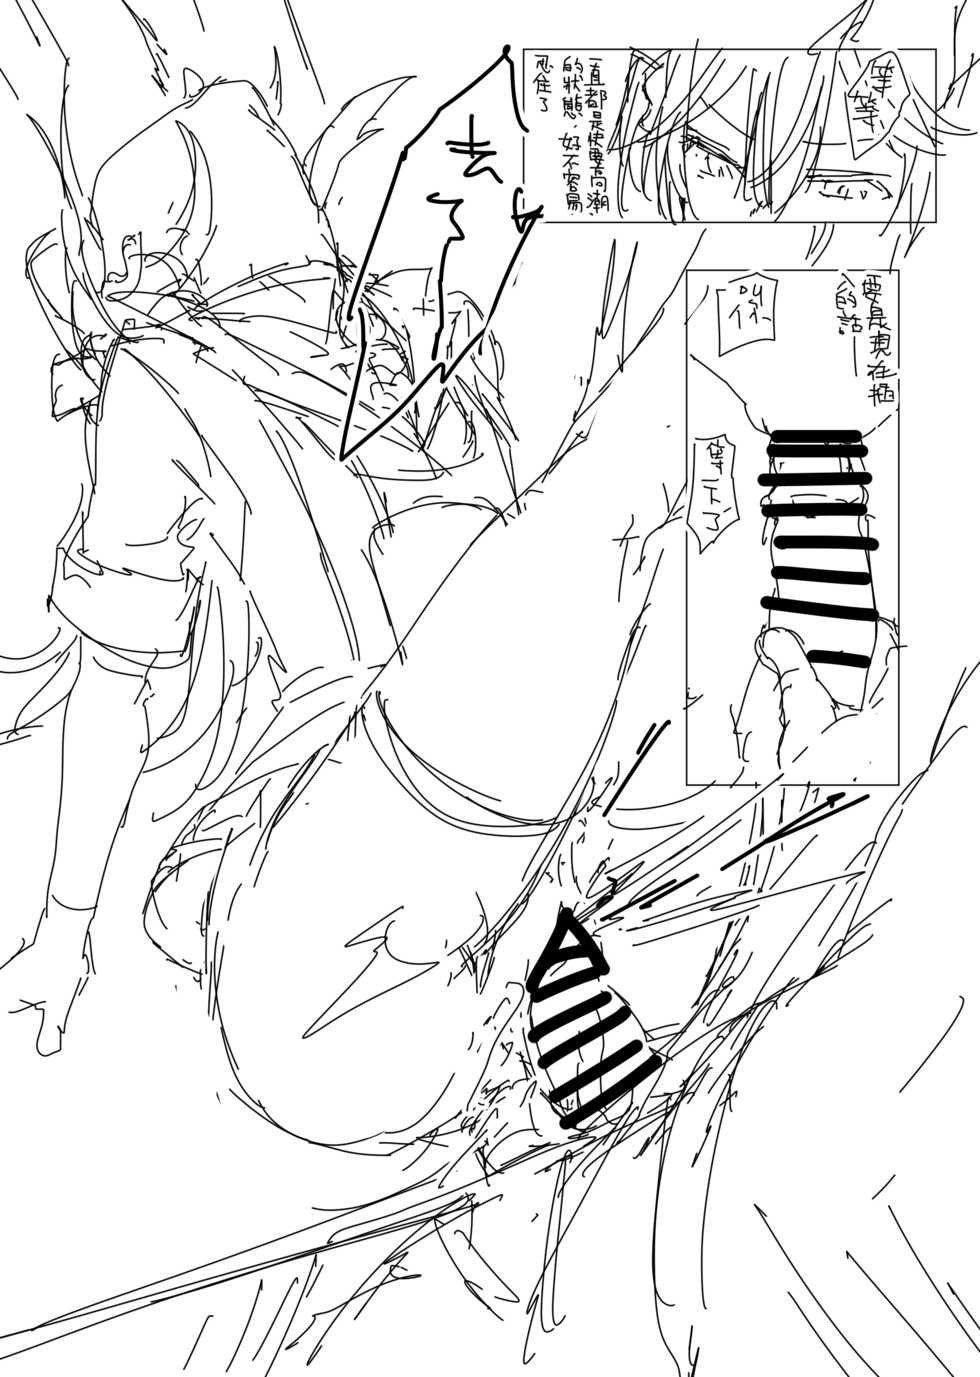 [013] Hipper Rakugaki Manga (Azur Lane) - Page 22